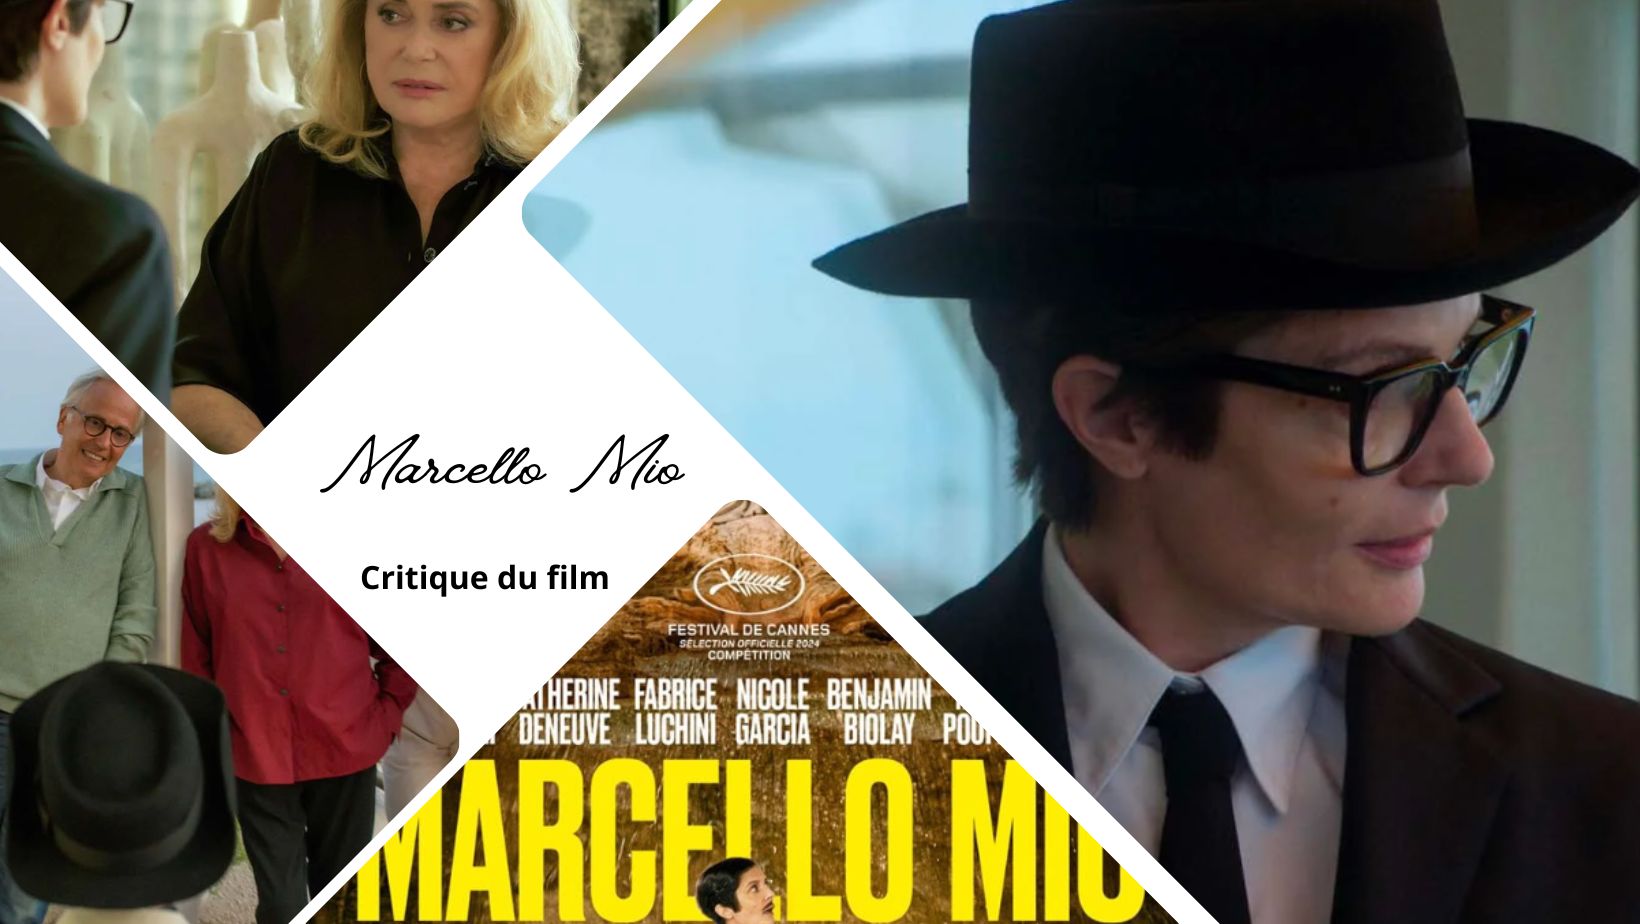 Marcello Mio de Christophe Honoré - Critique du film